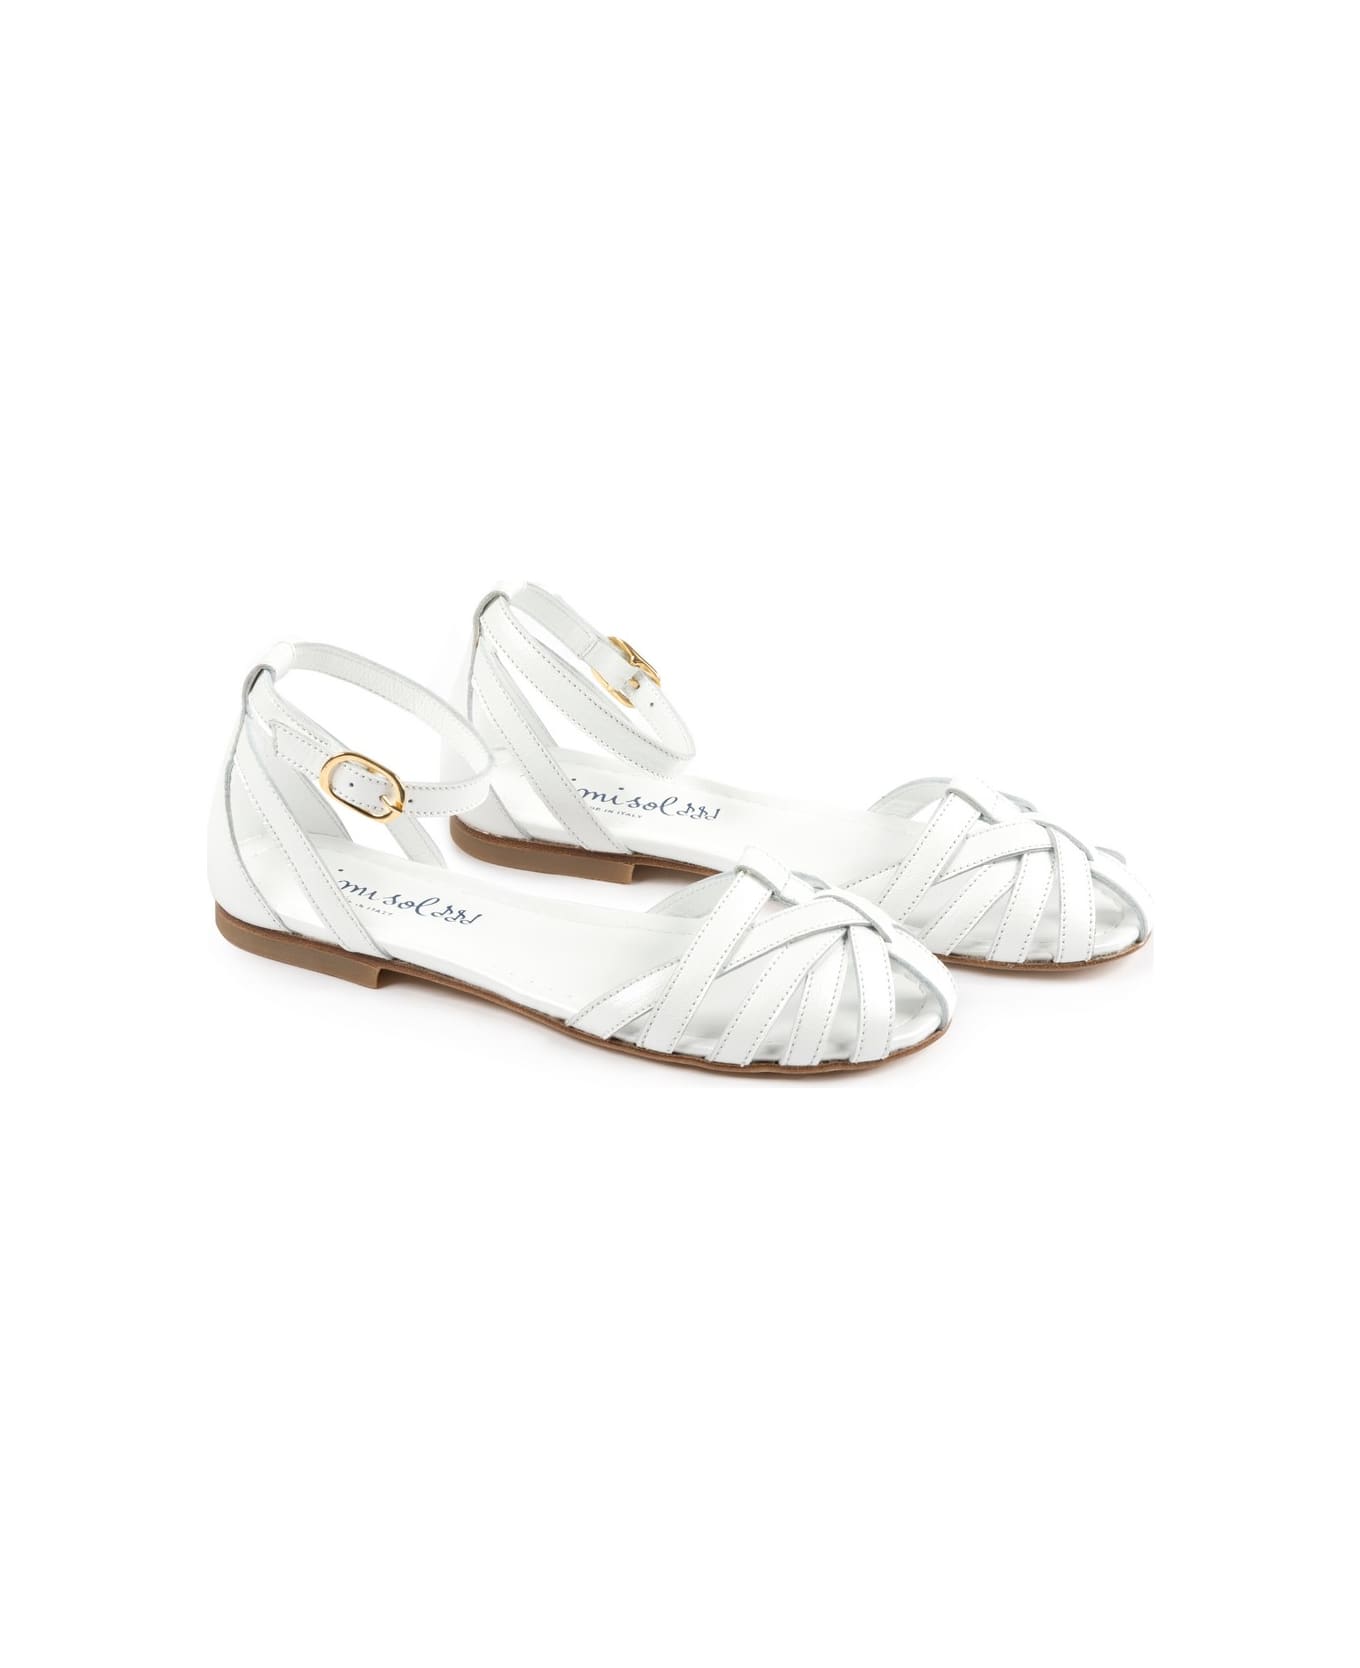 MiMiSol Sandals - White シューズ